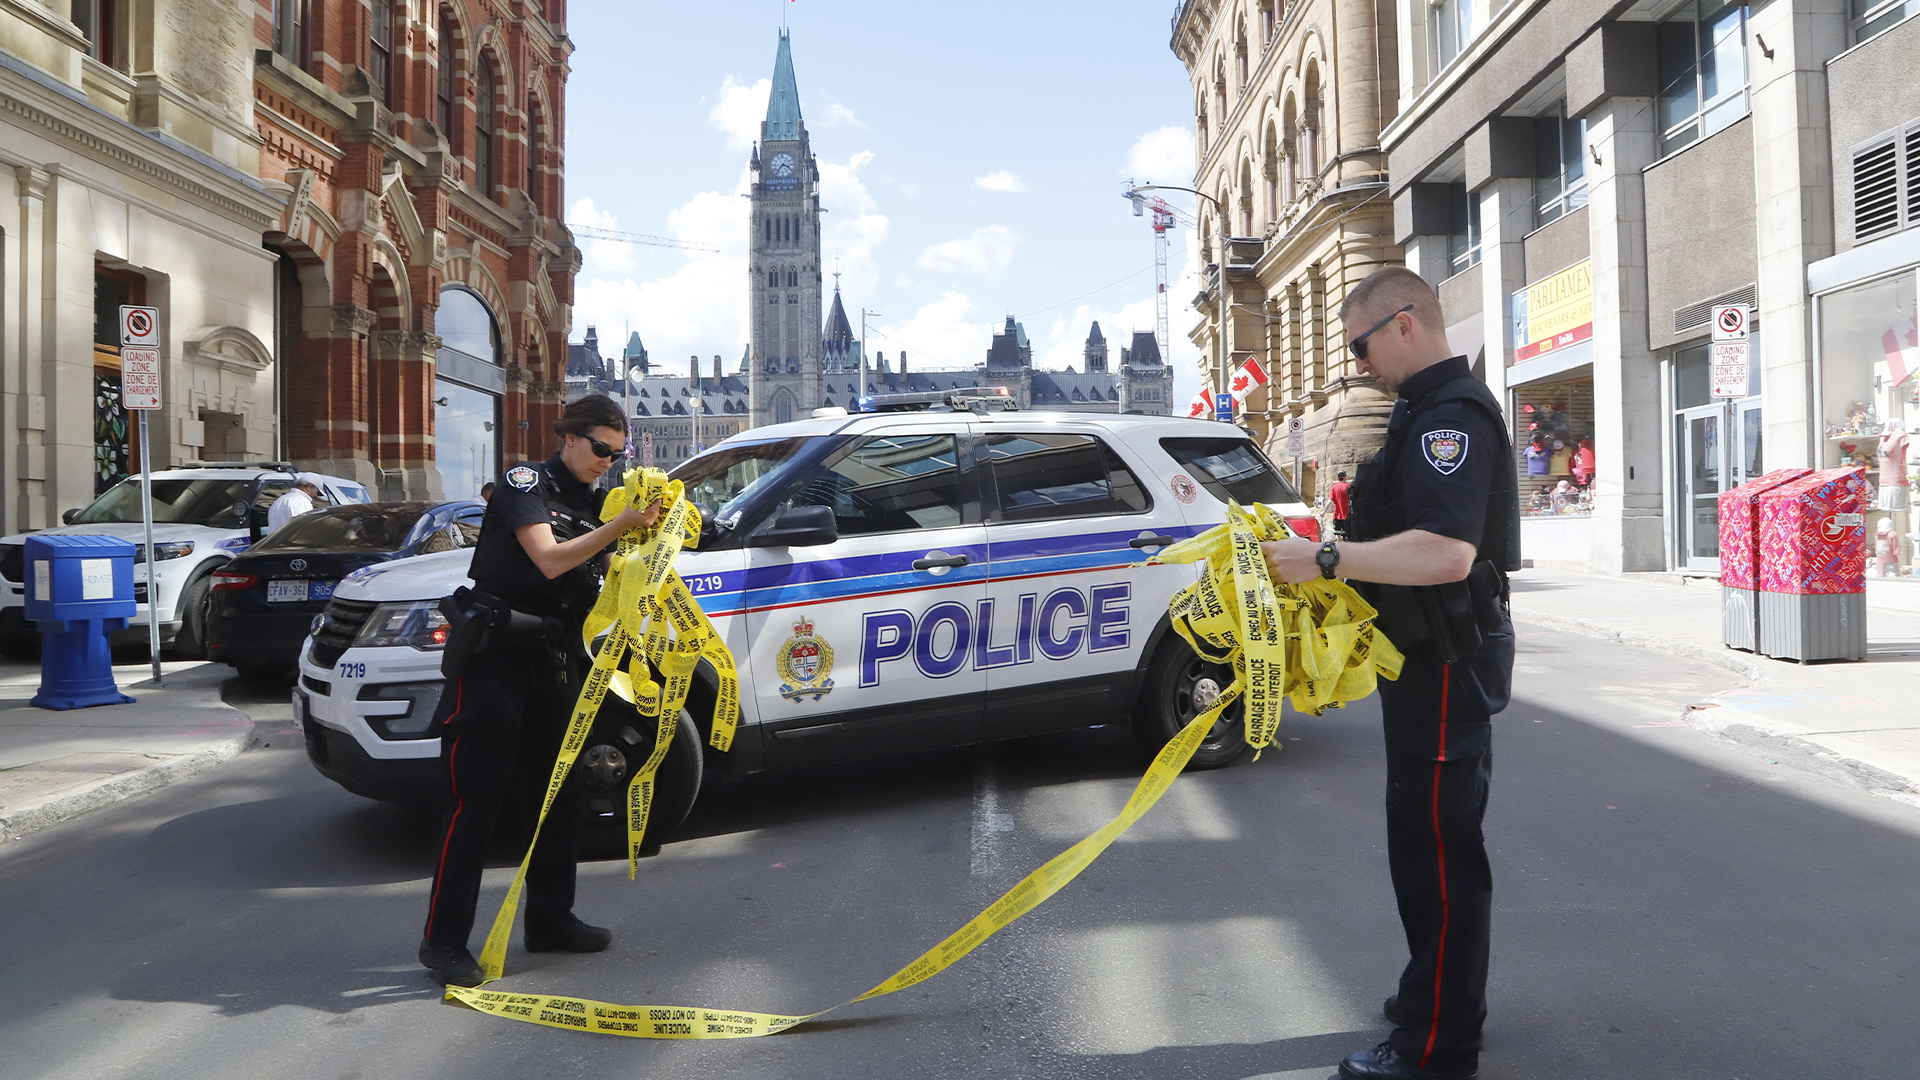 La colline du Parlement à Ottawa a rouvert ses portes après qu'une enquête policière sur une «possible menace» ait maintenu la Cité parlementaire fermée pendant plusieurs heures samedi après-midi.